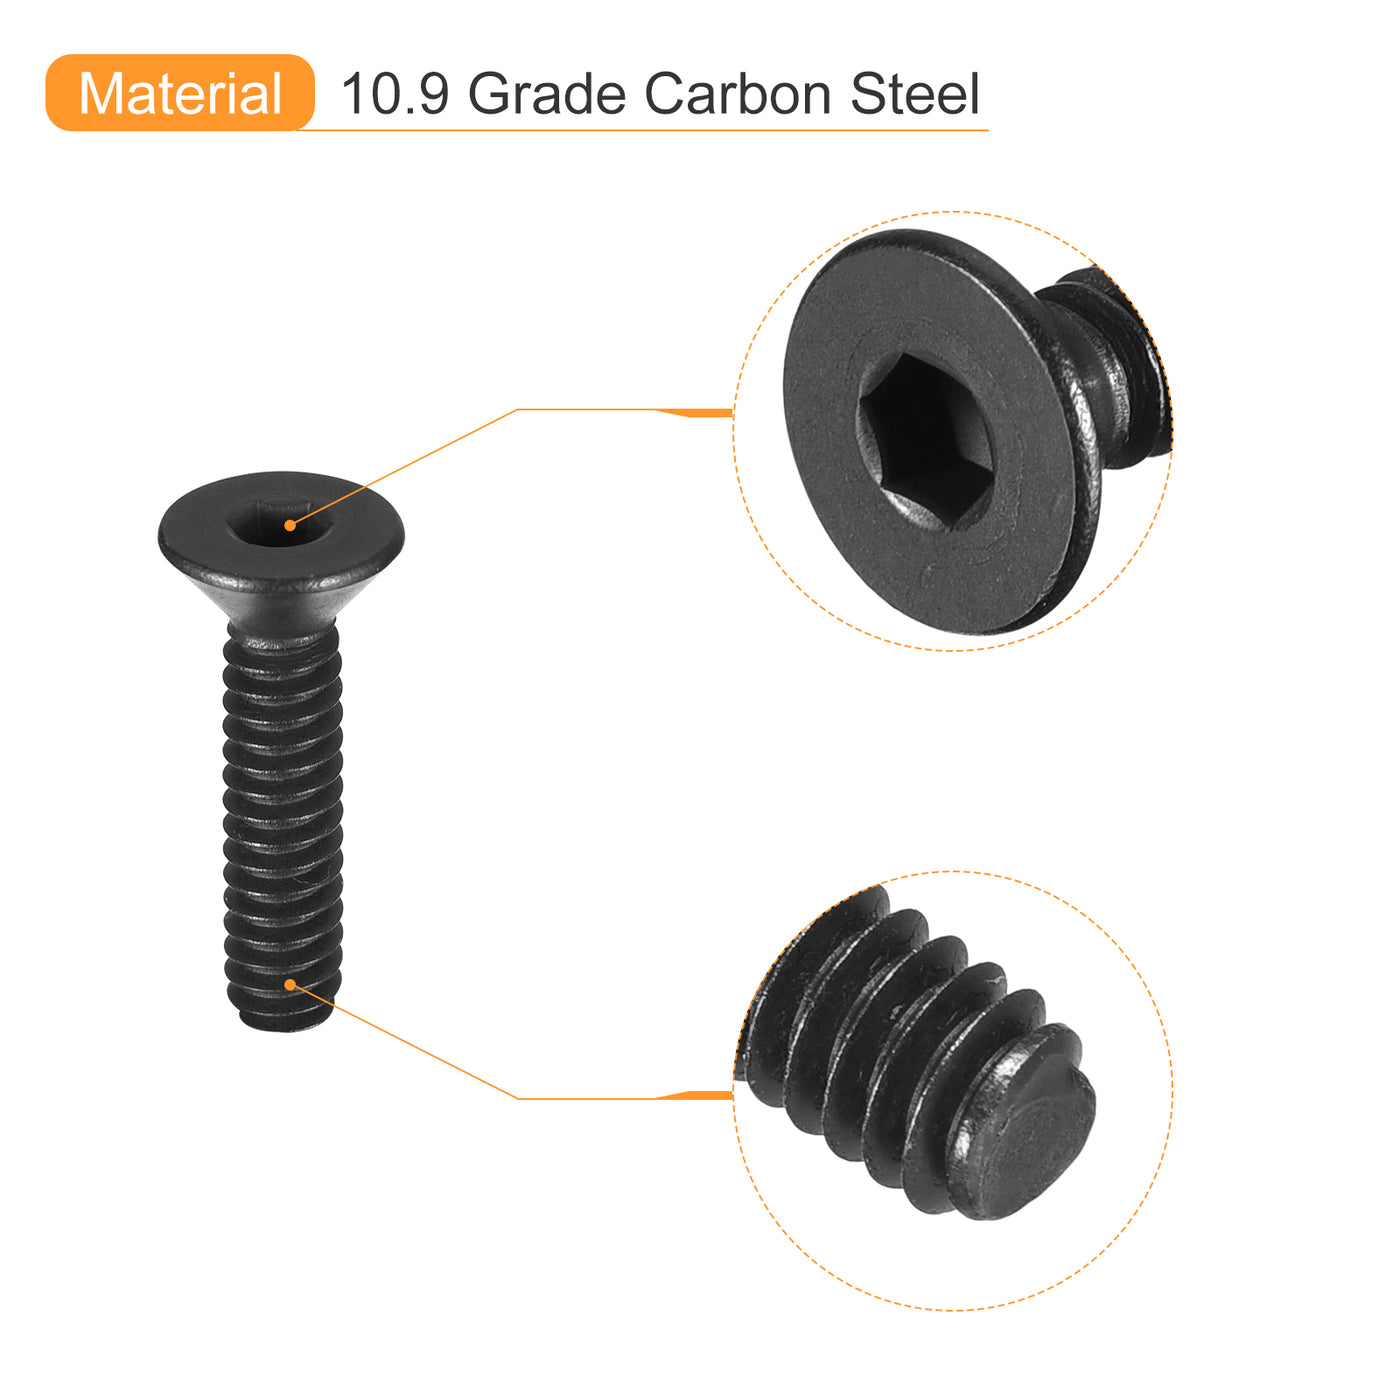 uxcell Uxcell #5-40x1/2" Flat Head Socket Cap Screws, 10.9 Grade Carbon, Black, 20pcs